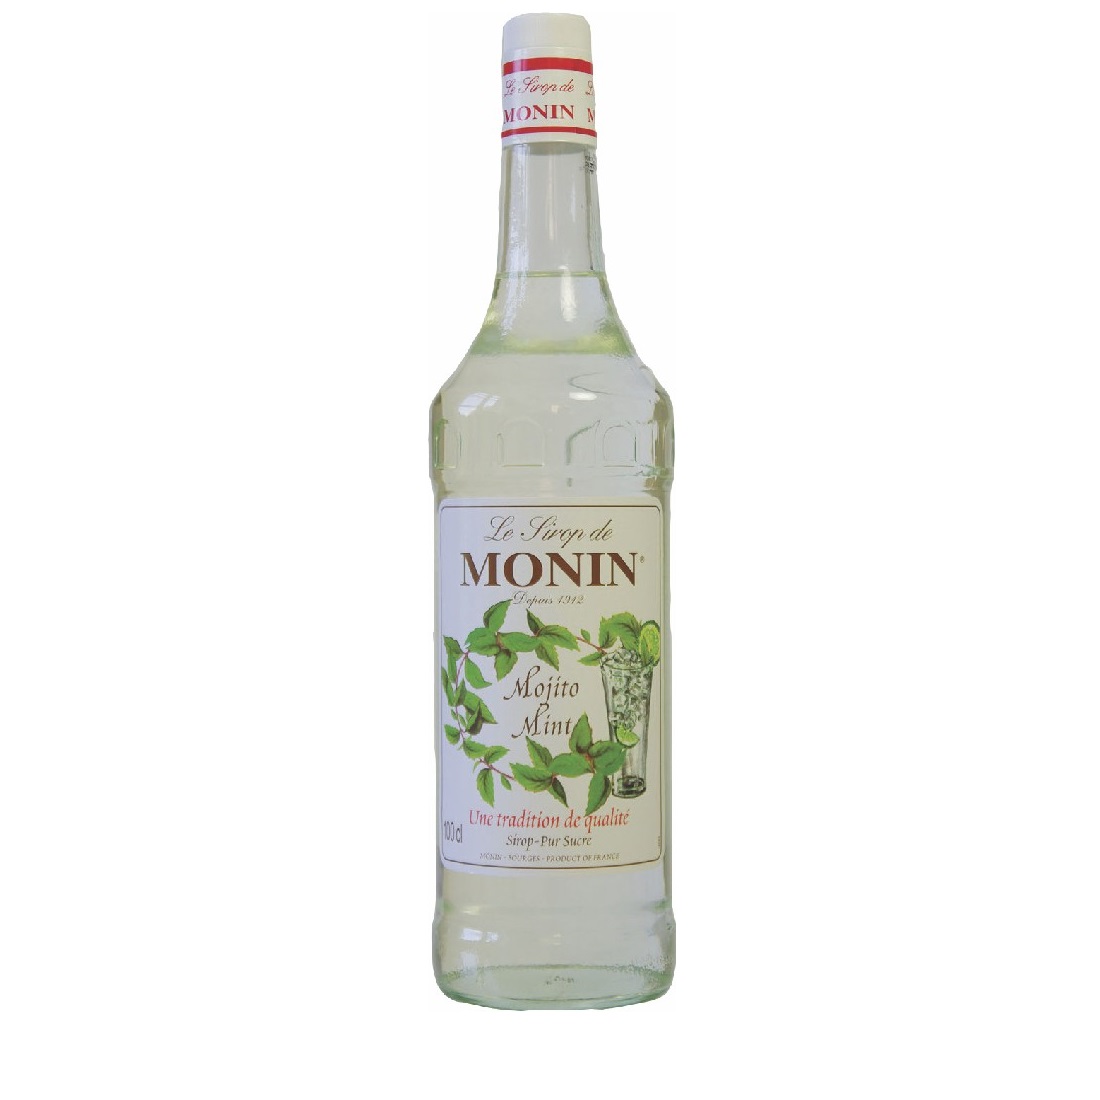 Sirô hỗn hợp chanh & bạc hà (Mojito Mint) hiệu Monin-chai 1 lít